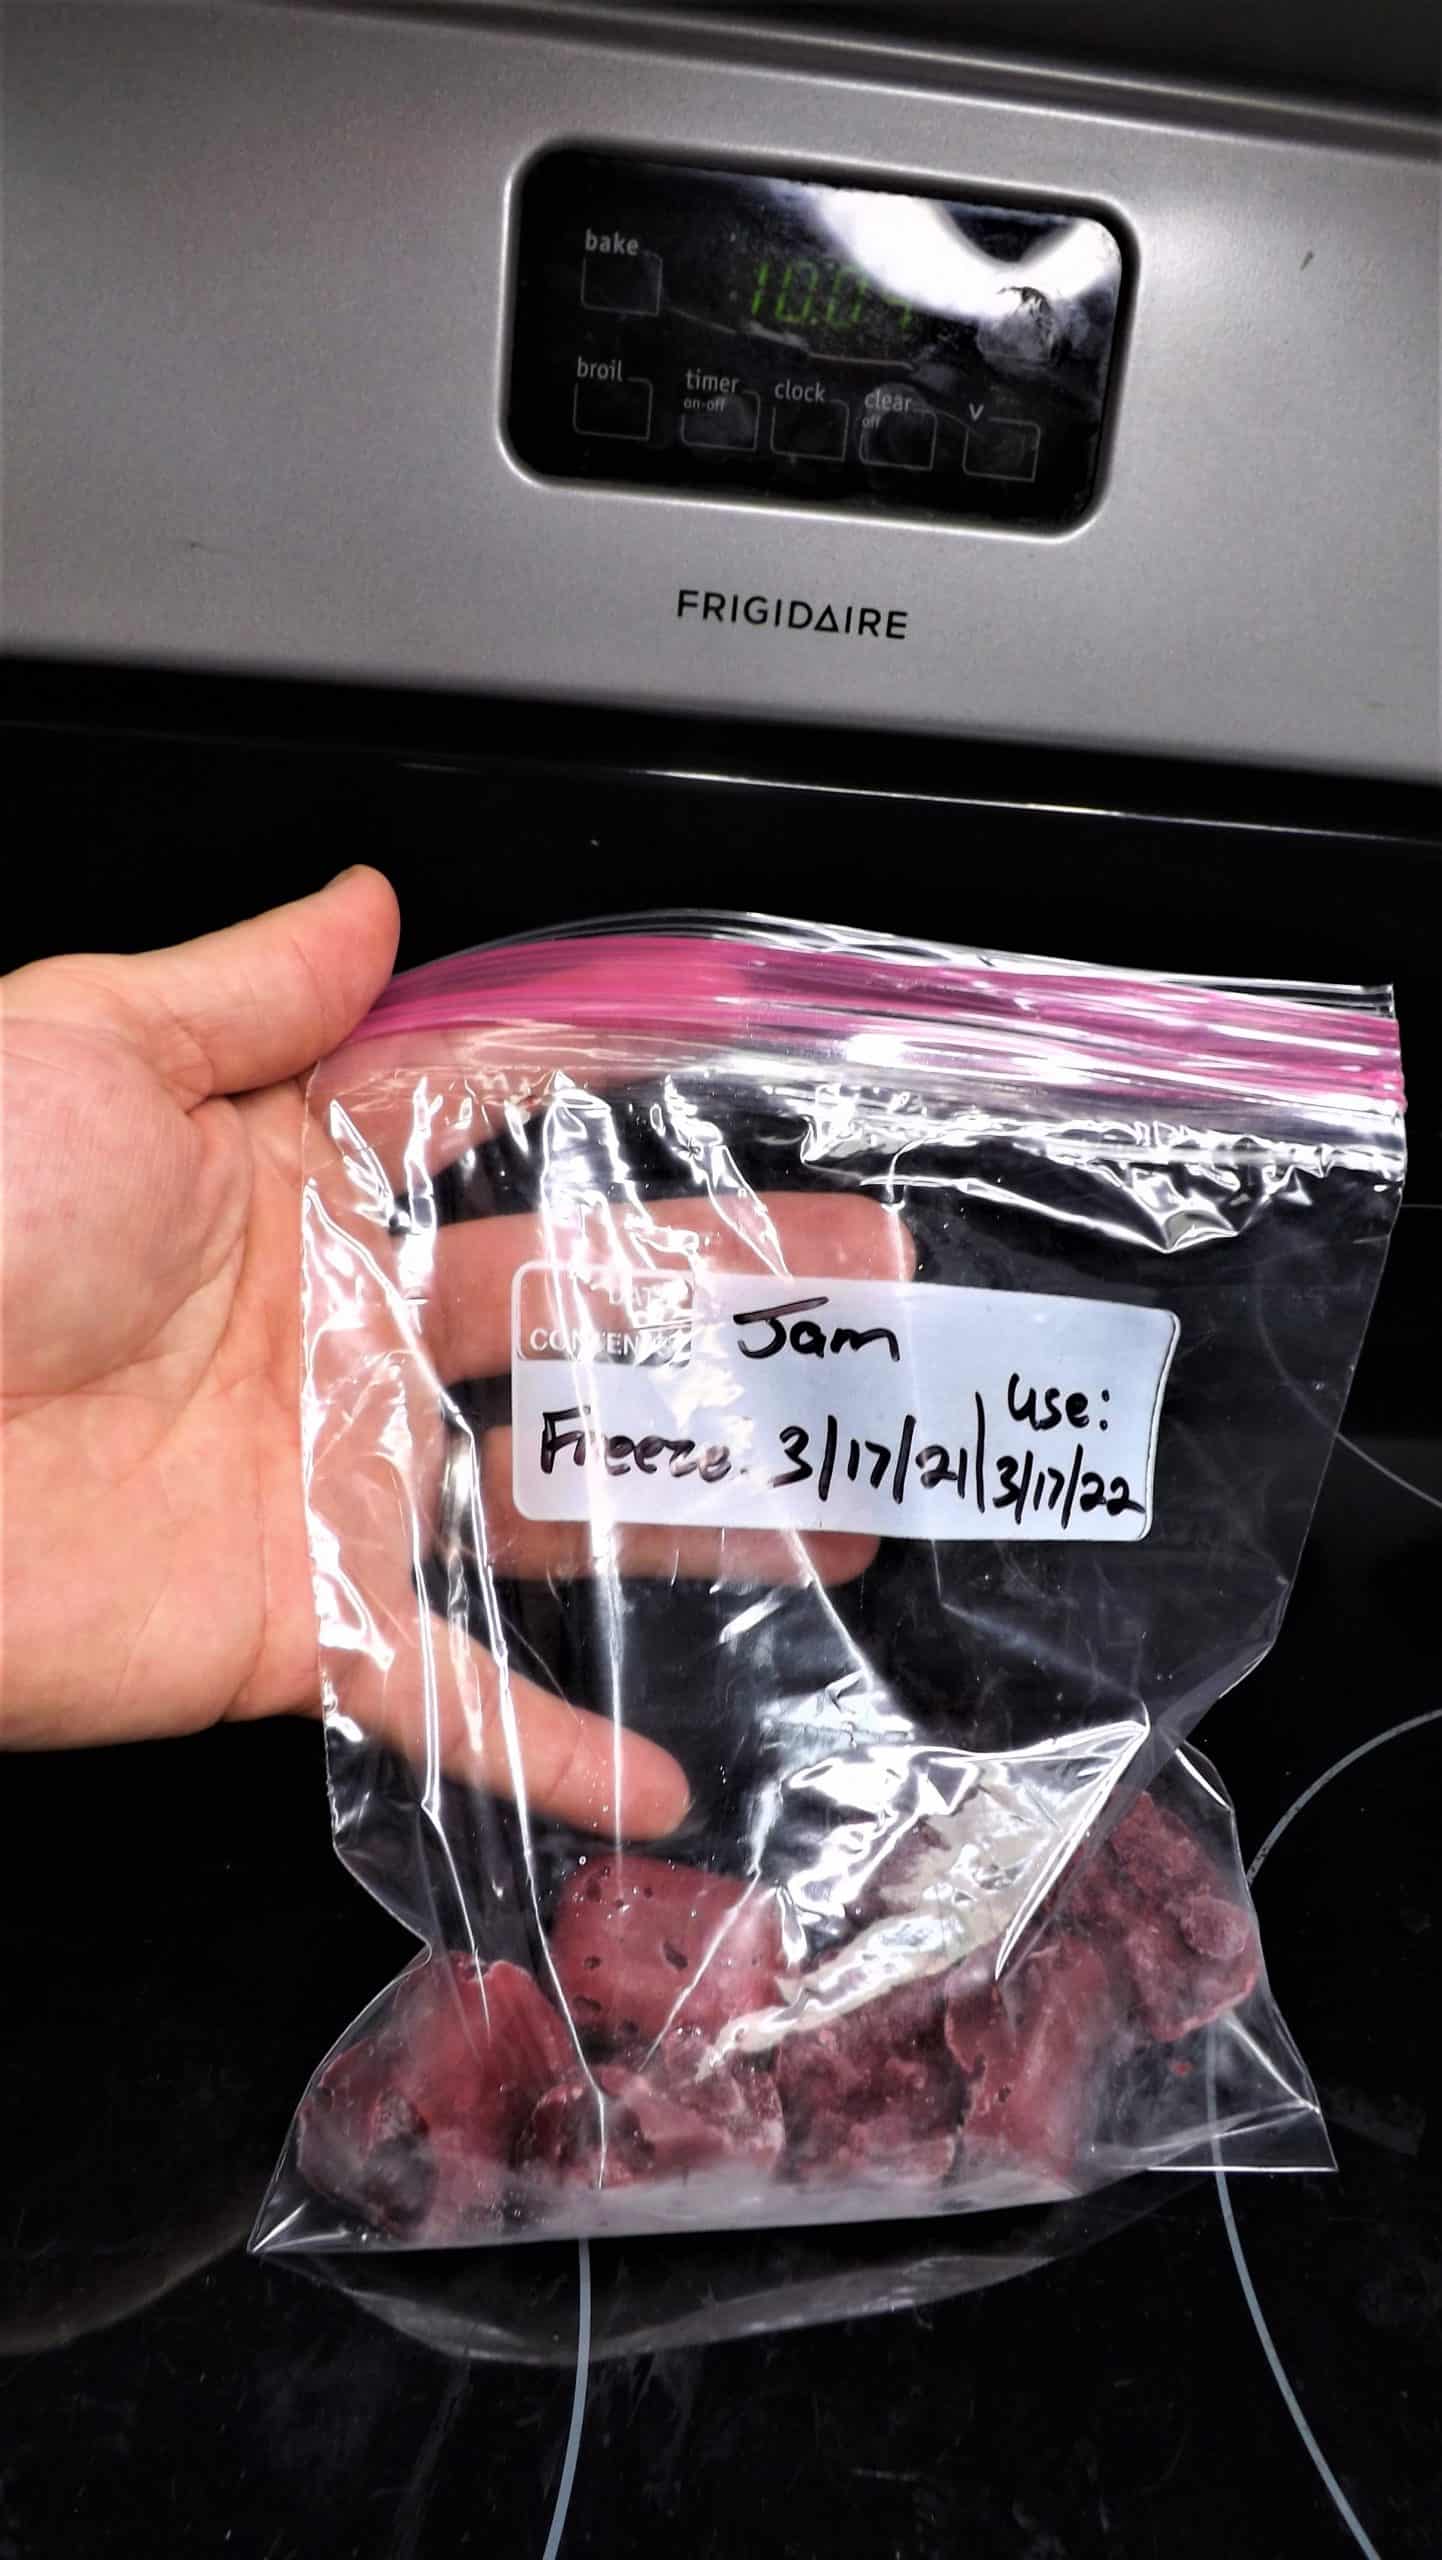 freezer bags of frozen jam cubes